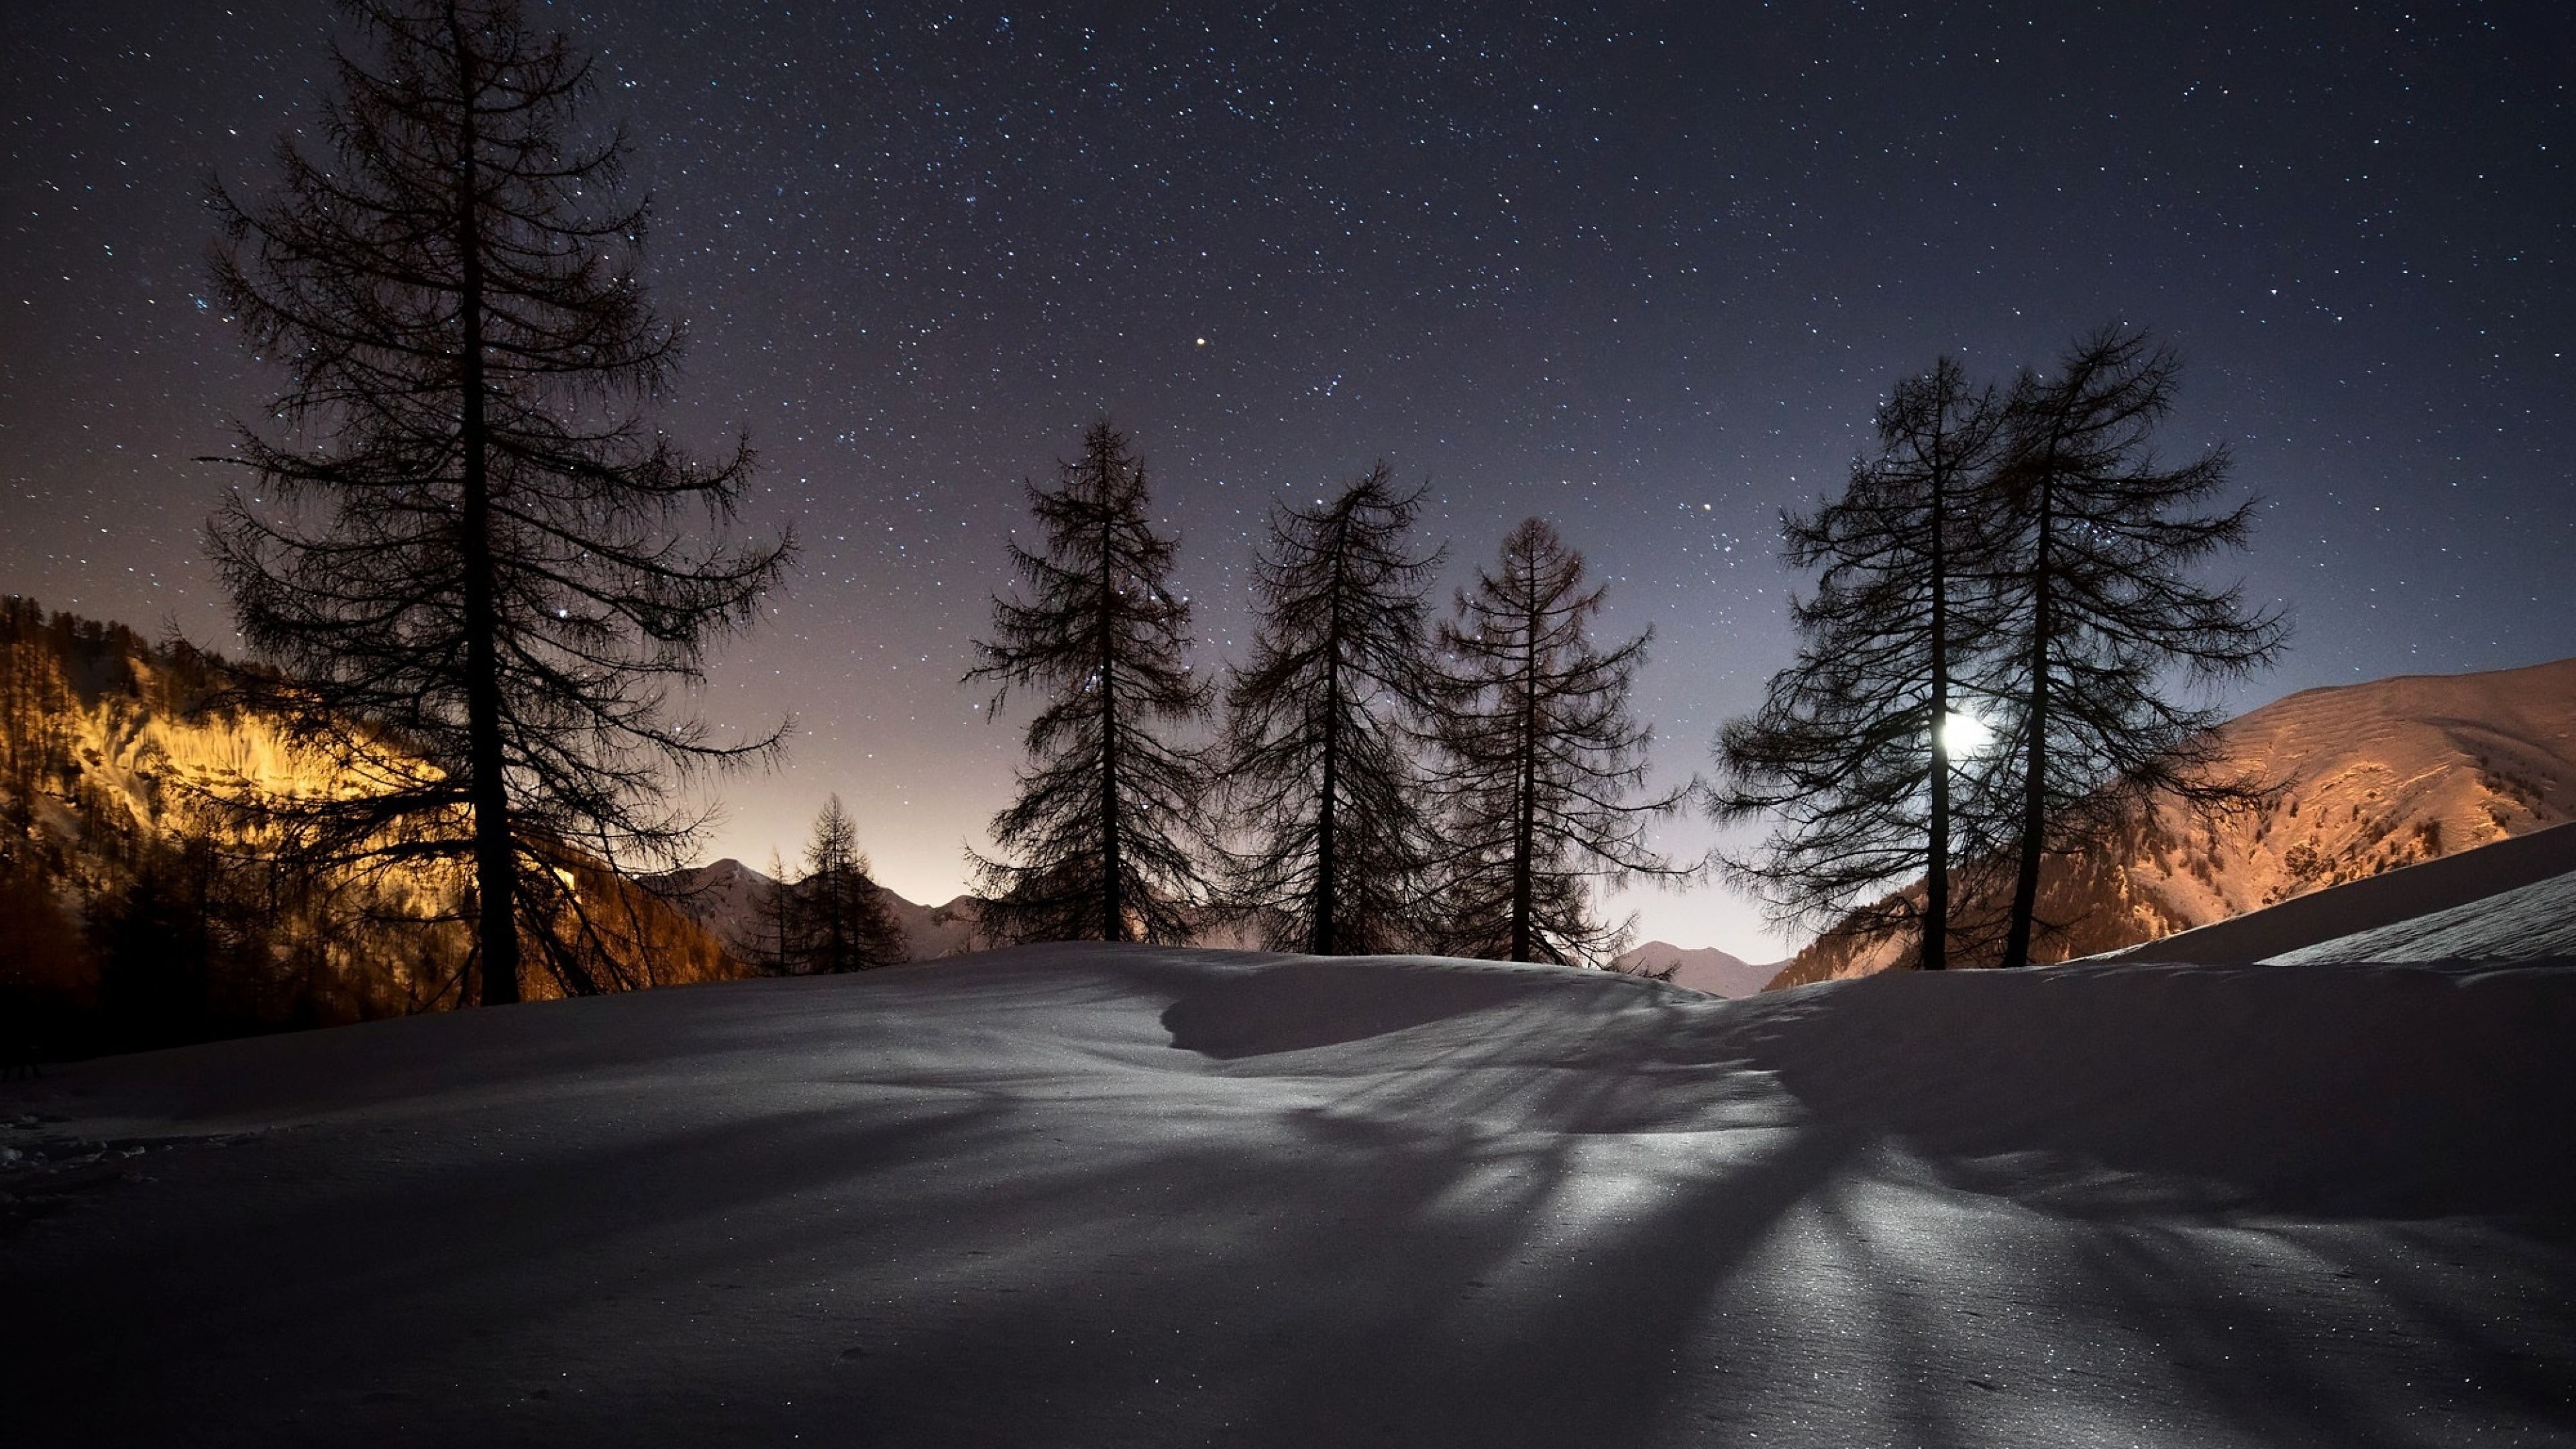 Geography travels, Night landscape, Winter wallpaper, Serene beauty, 3840x2160 4K Desktop